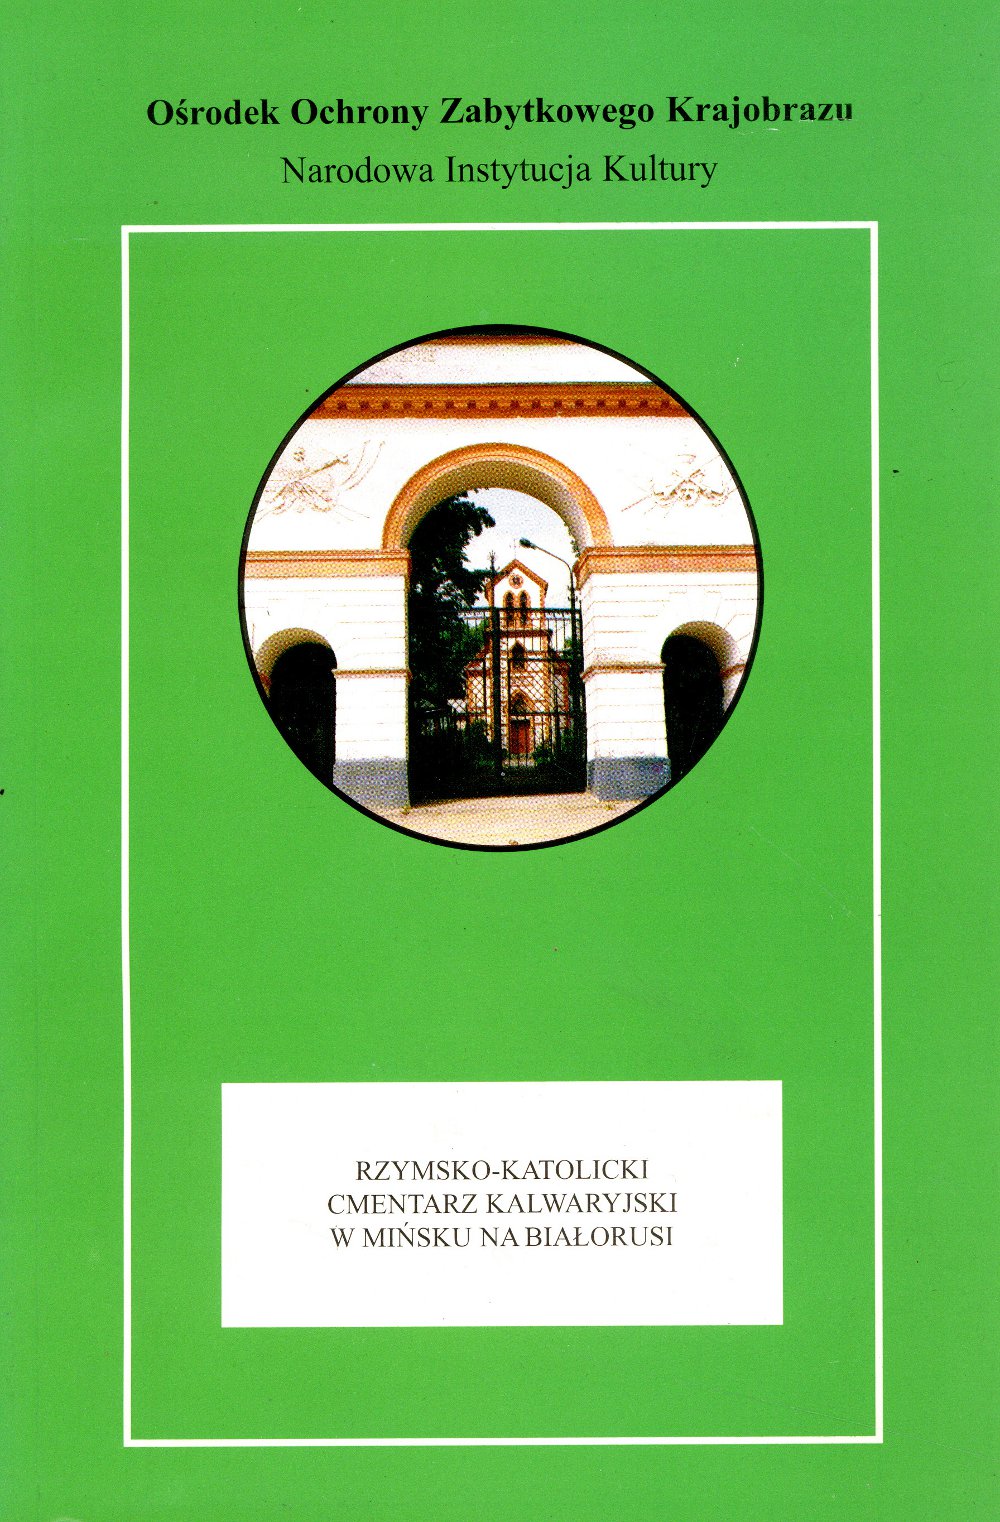 Rzymsko-Katolicki Cmentarz Kalwaryjski w Mińsku na Białorusi